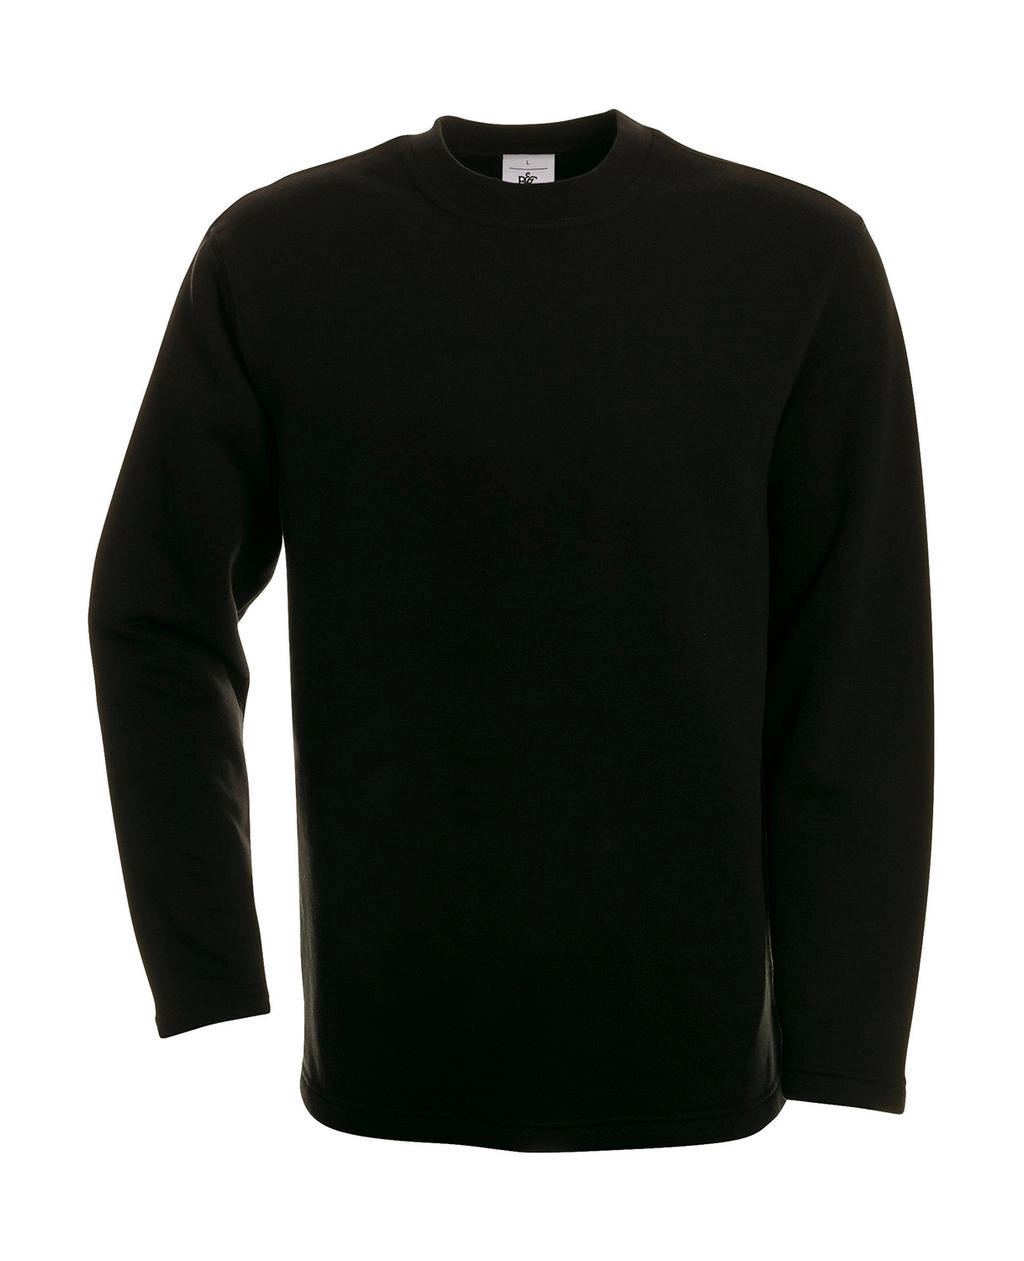 Open Hem Sweatshirt zum Besticken und Bedrucken in der Farbe Black mit Ihren Logo, Schriftzug oder Motiv.